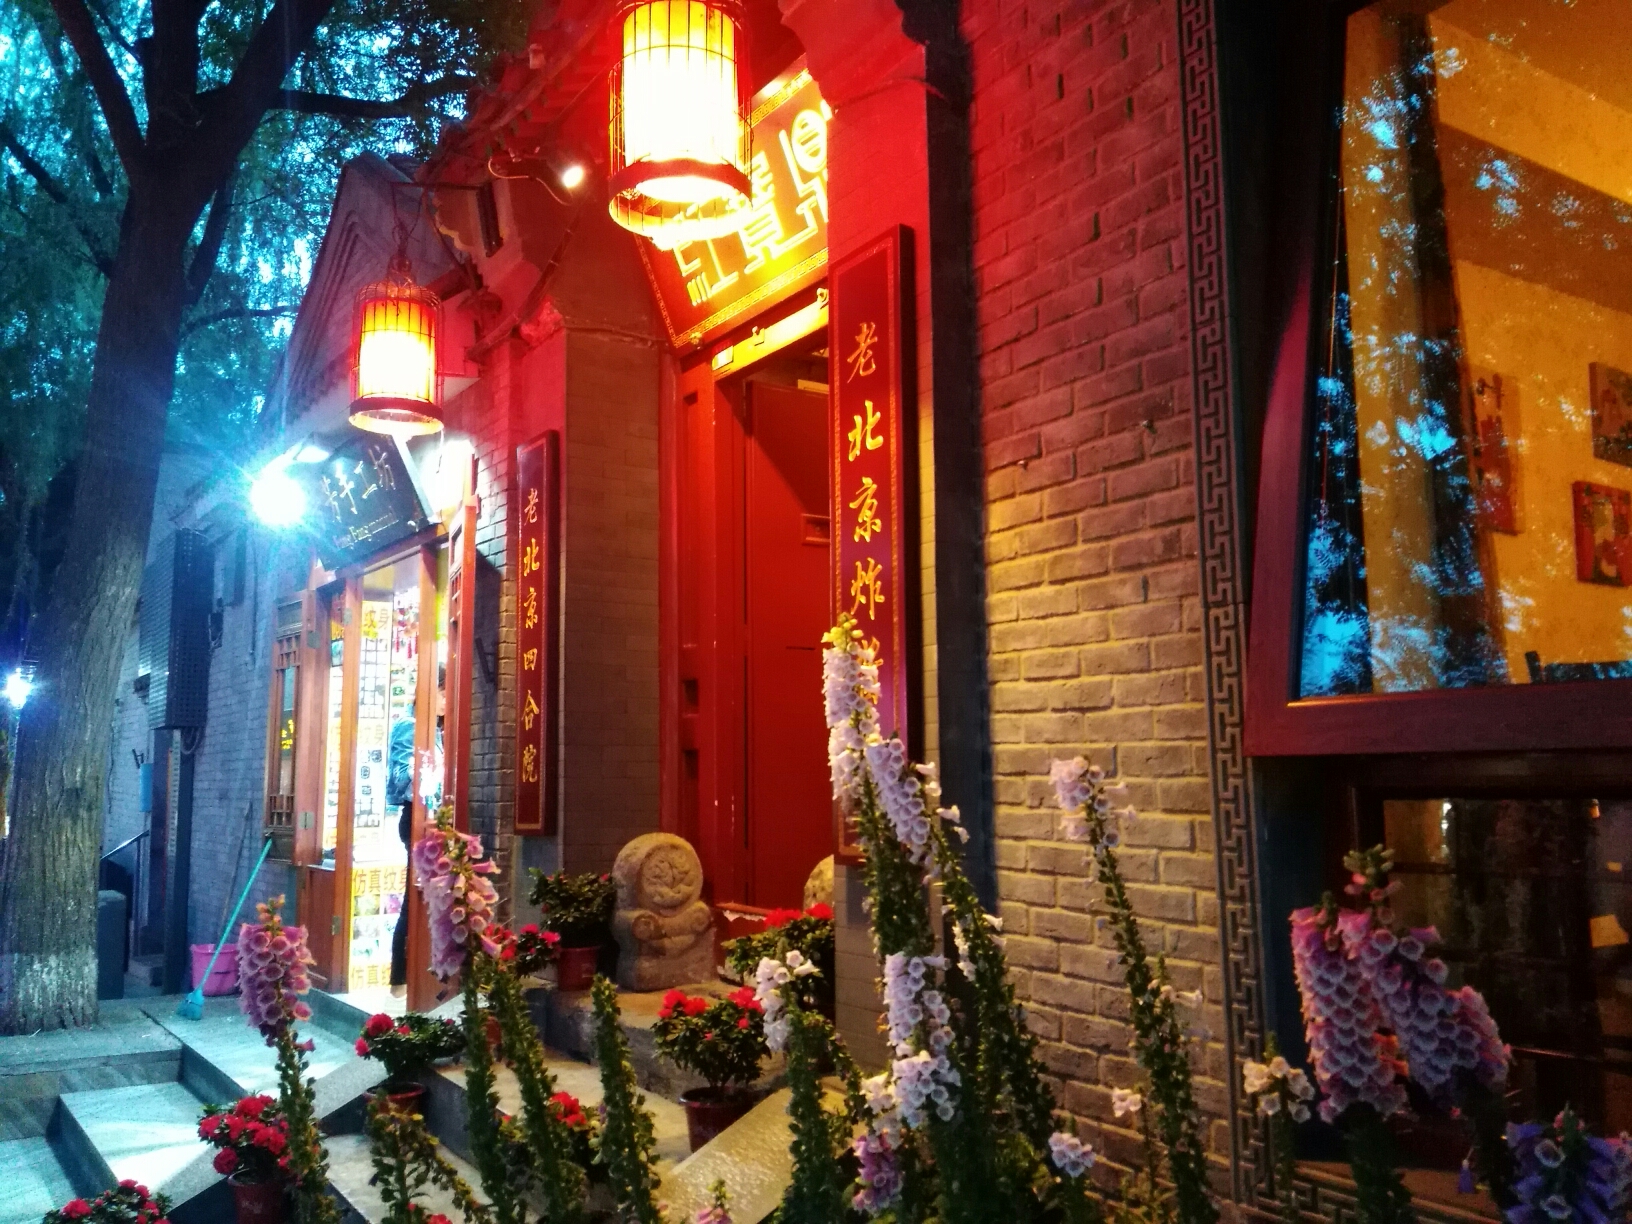 南锣鼓巷夜景印象,北京自助游攻略 - 马蜂窝